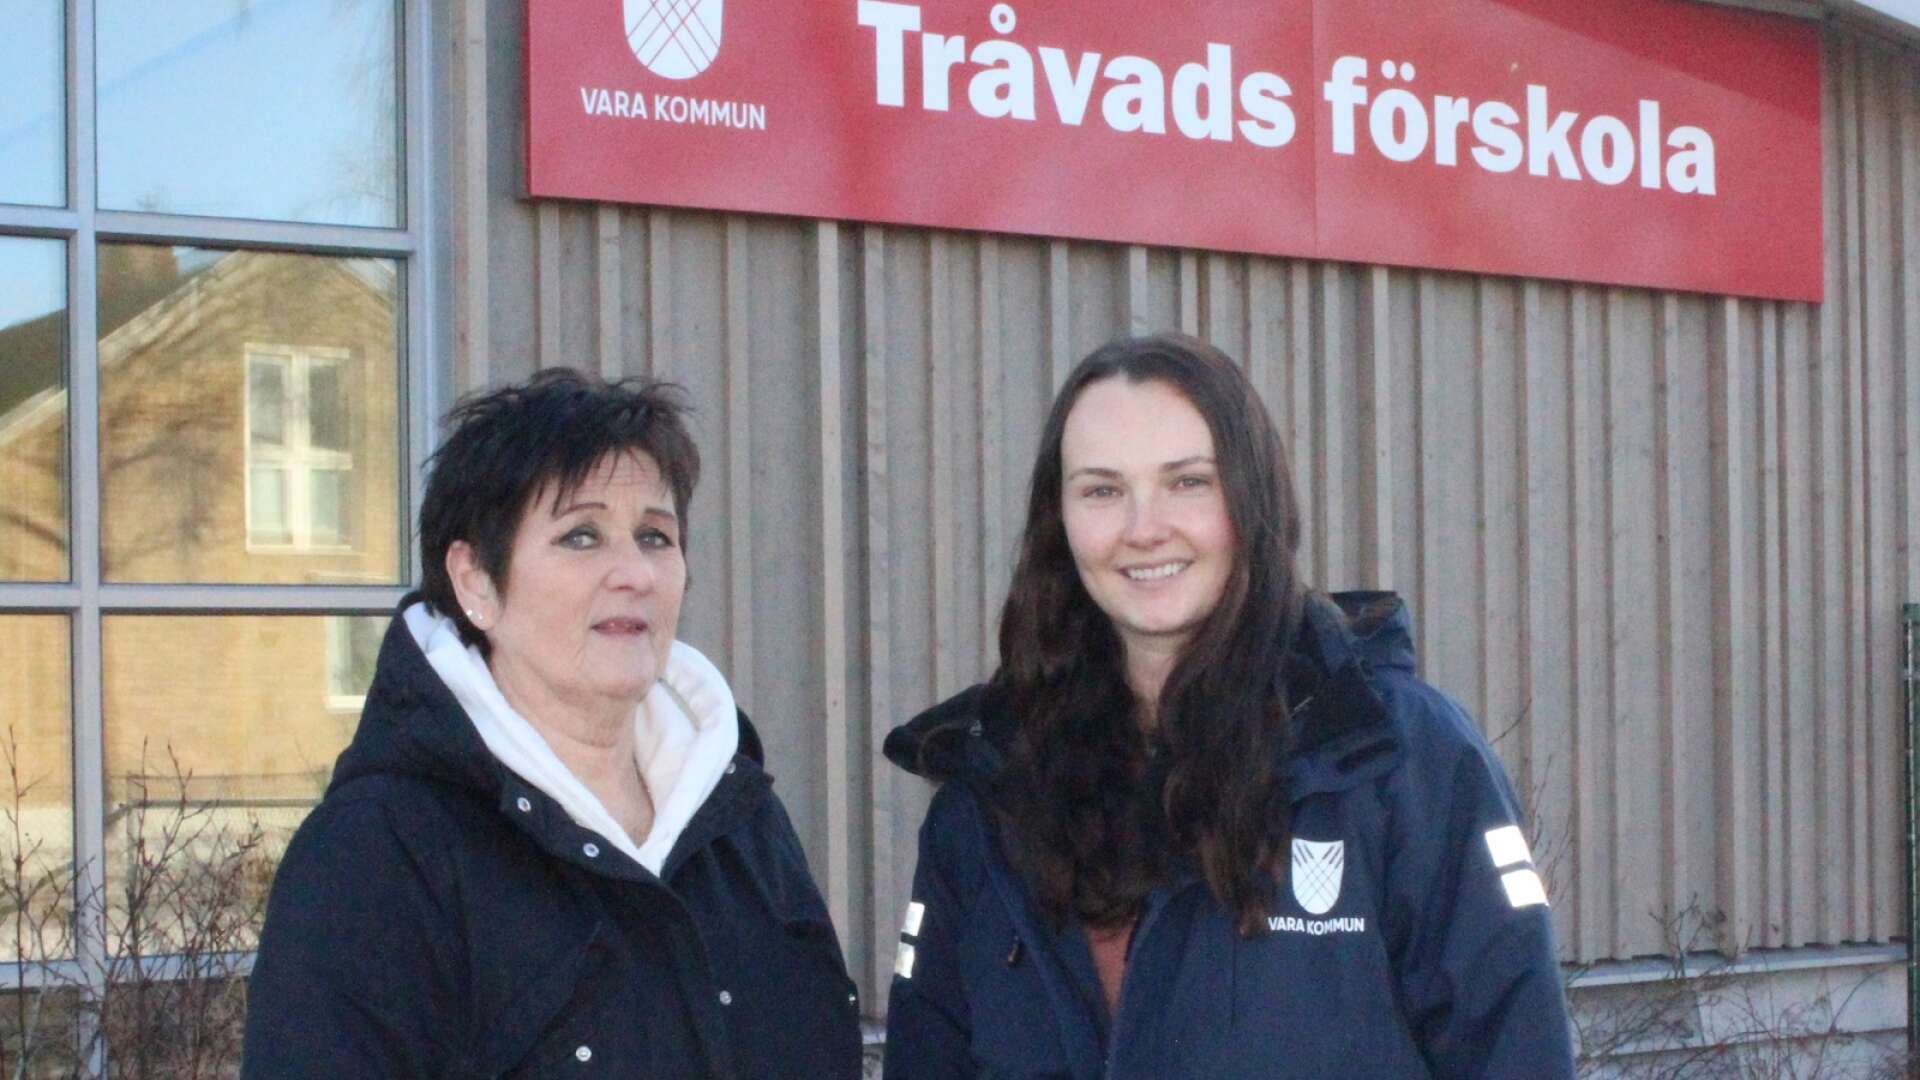 Marie Stigson, ABC-samordnare, och Linnea Sjörén Persson, pedagog på förskolan i Tråvad, menar att alla föräldrar har nytta av ABC-träffarna som Vara kommun erbjuder.